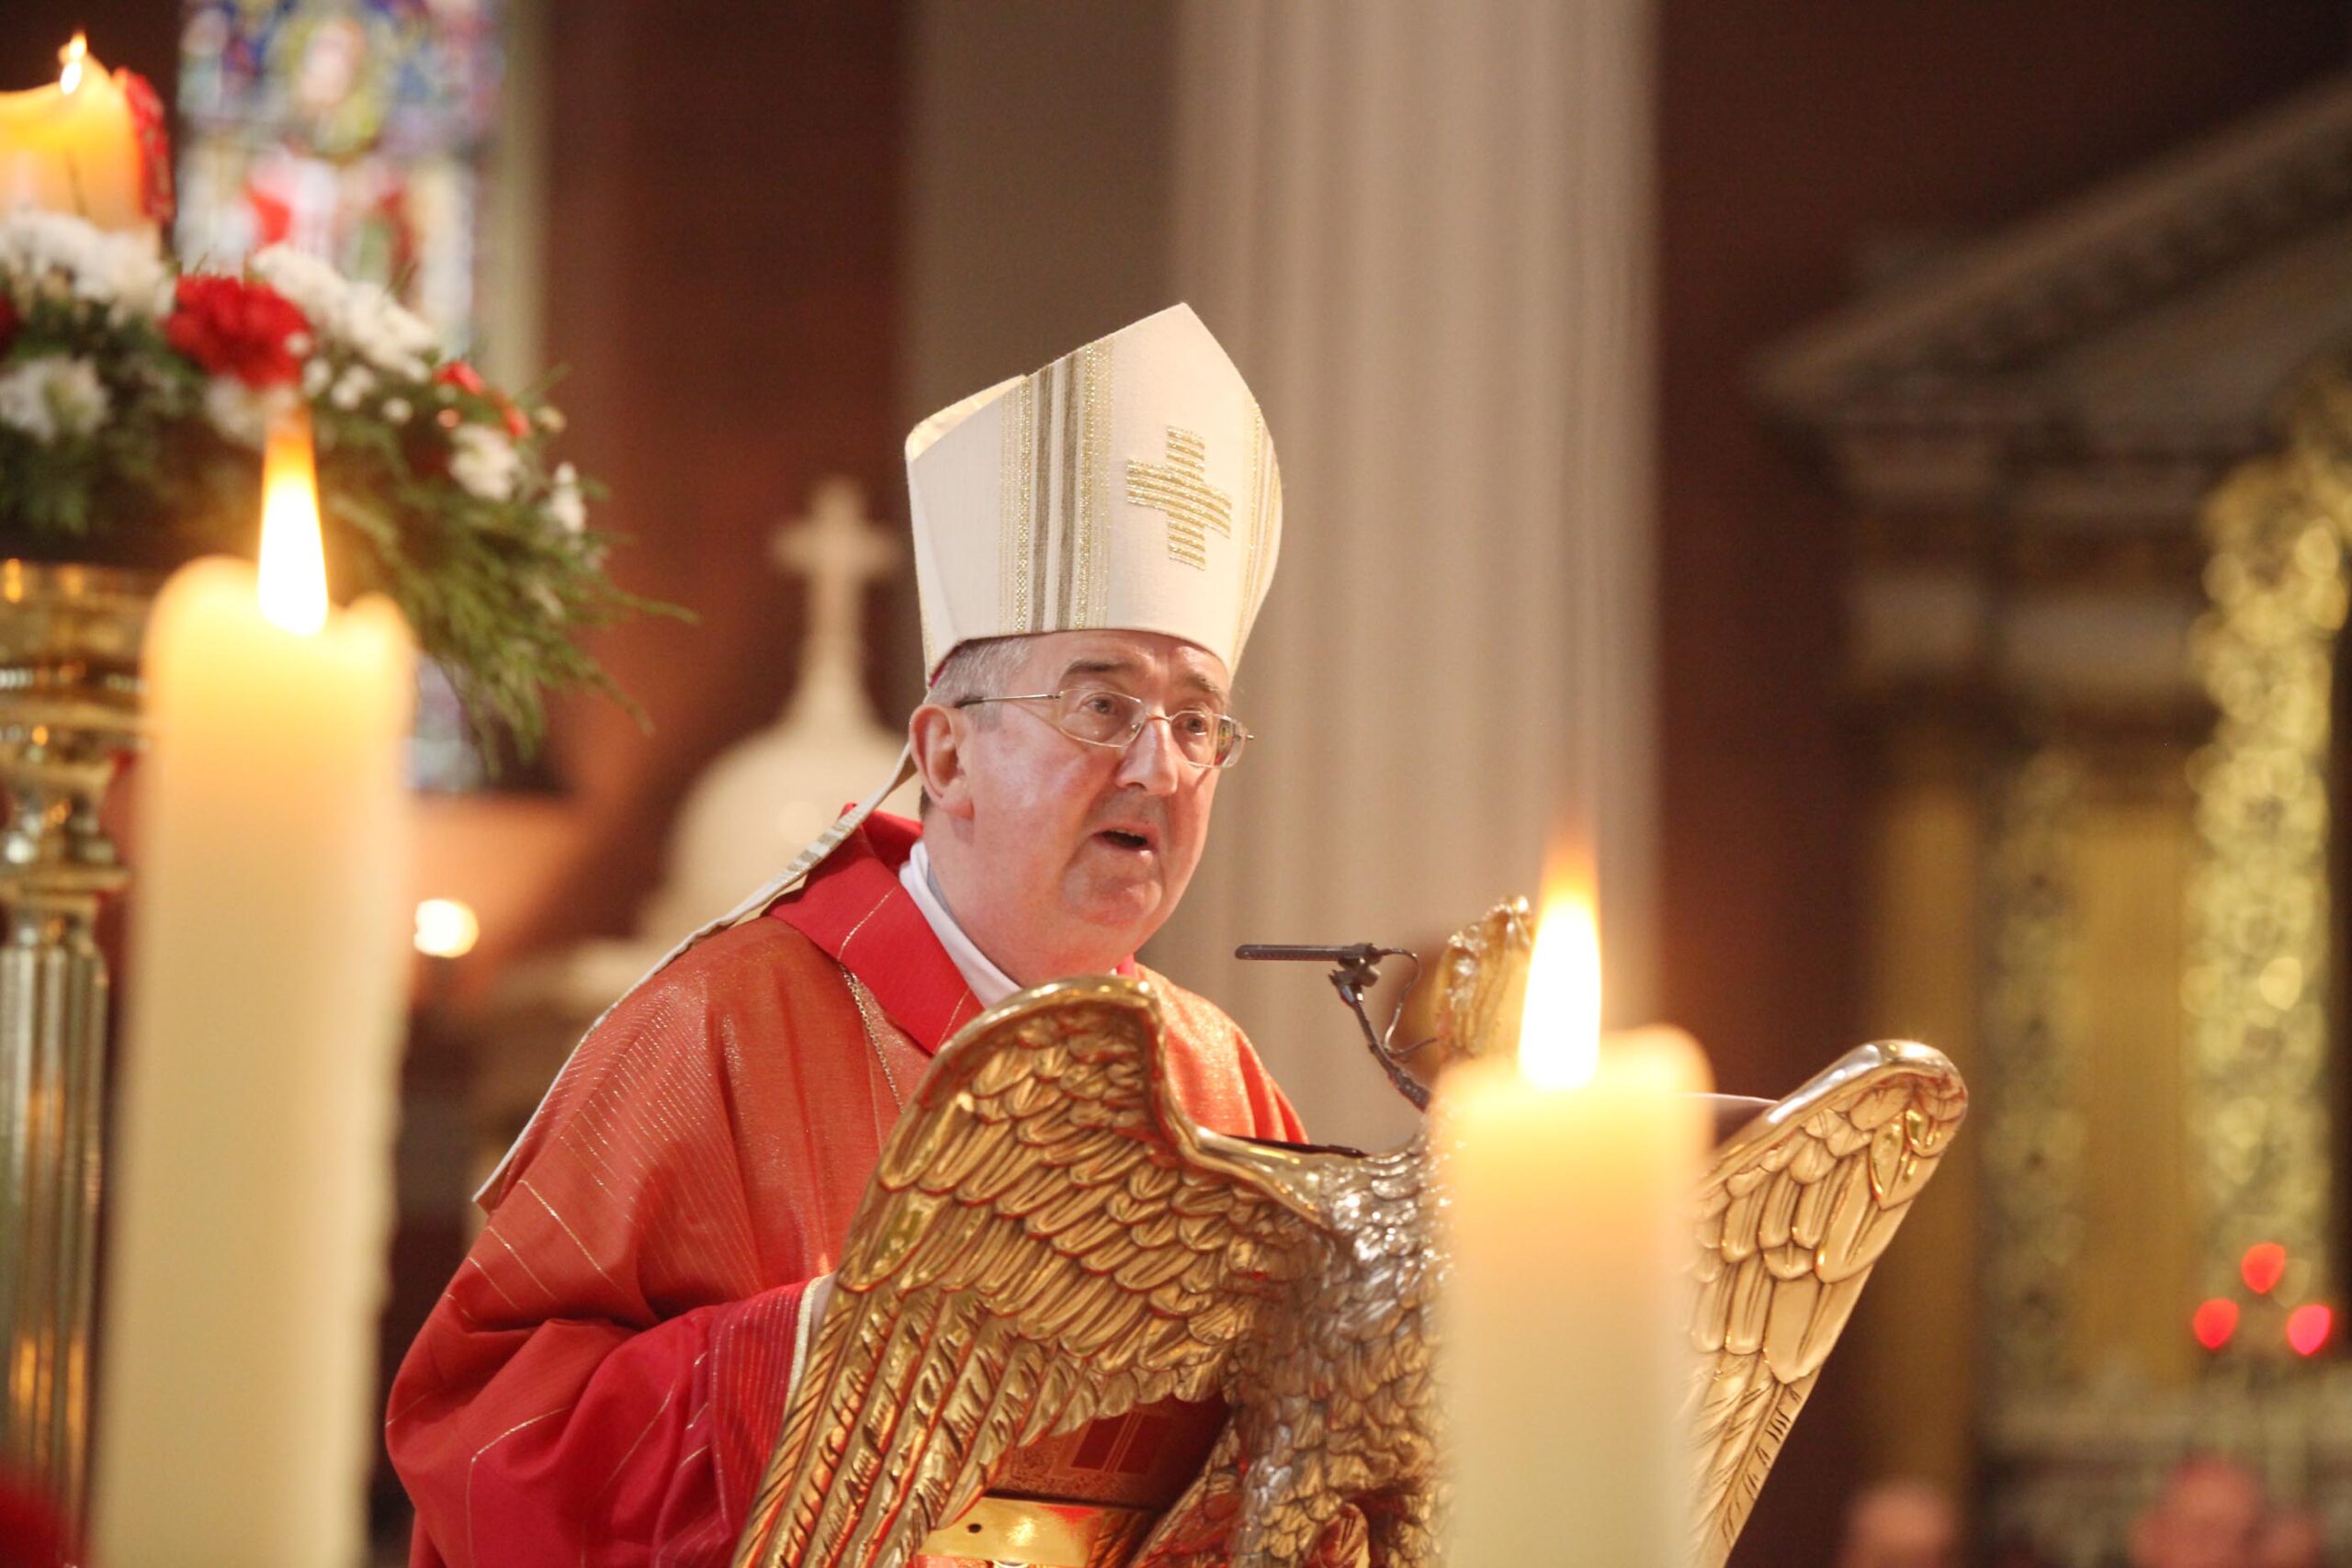 El arzobispo reza por los pacificadores irlandeses